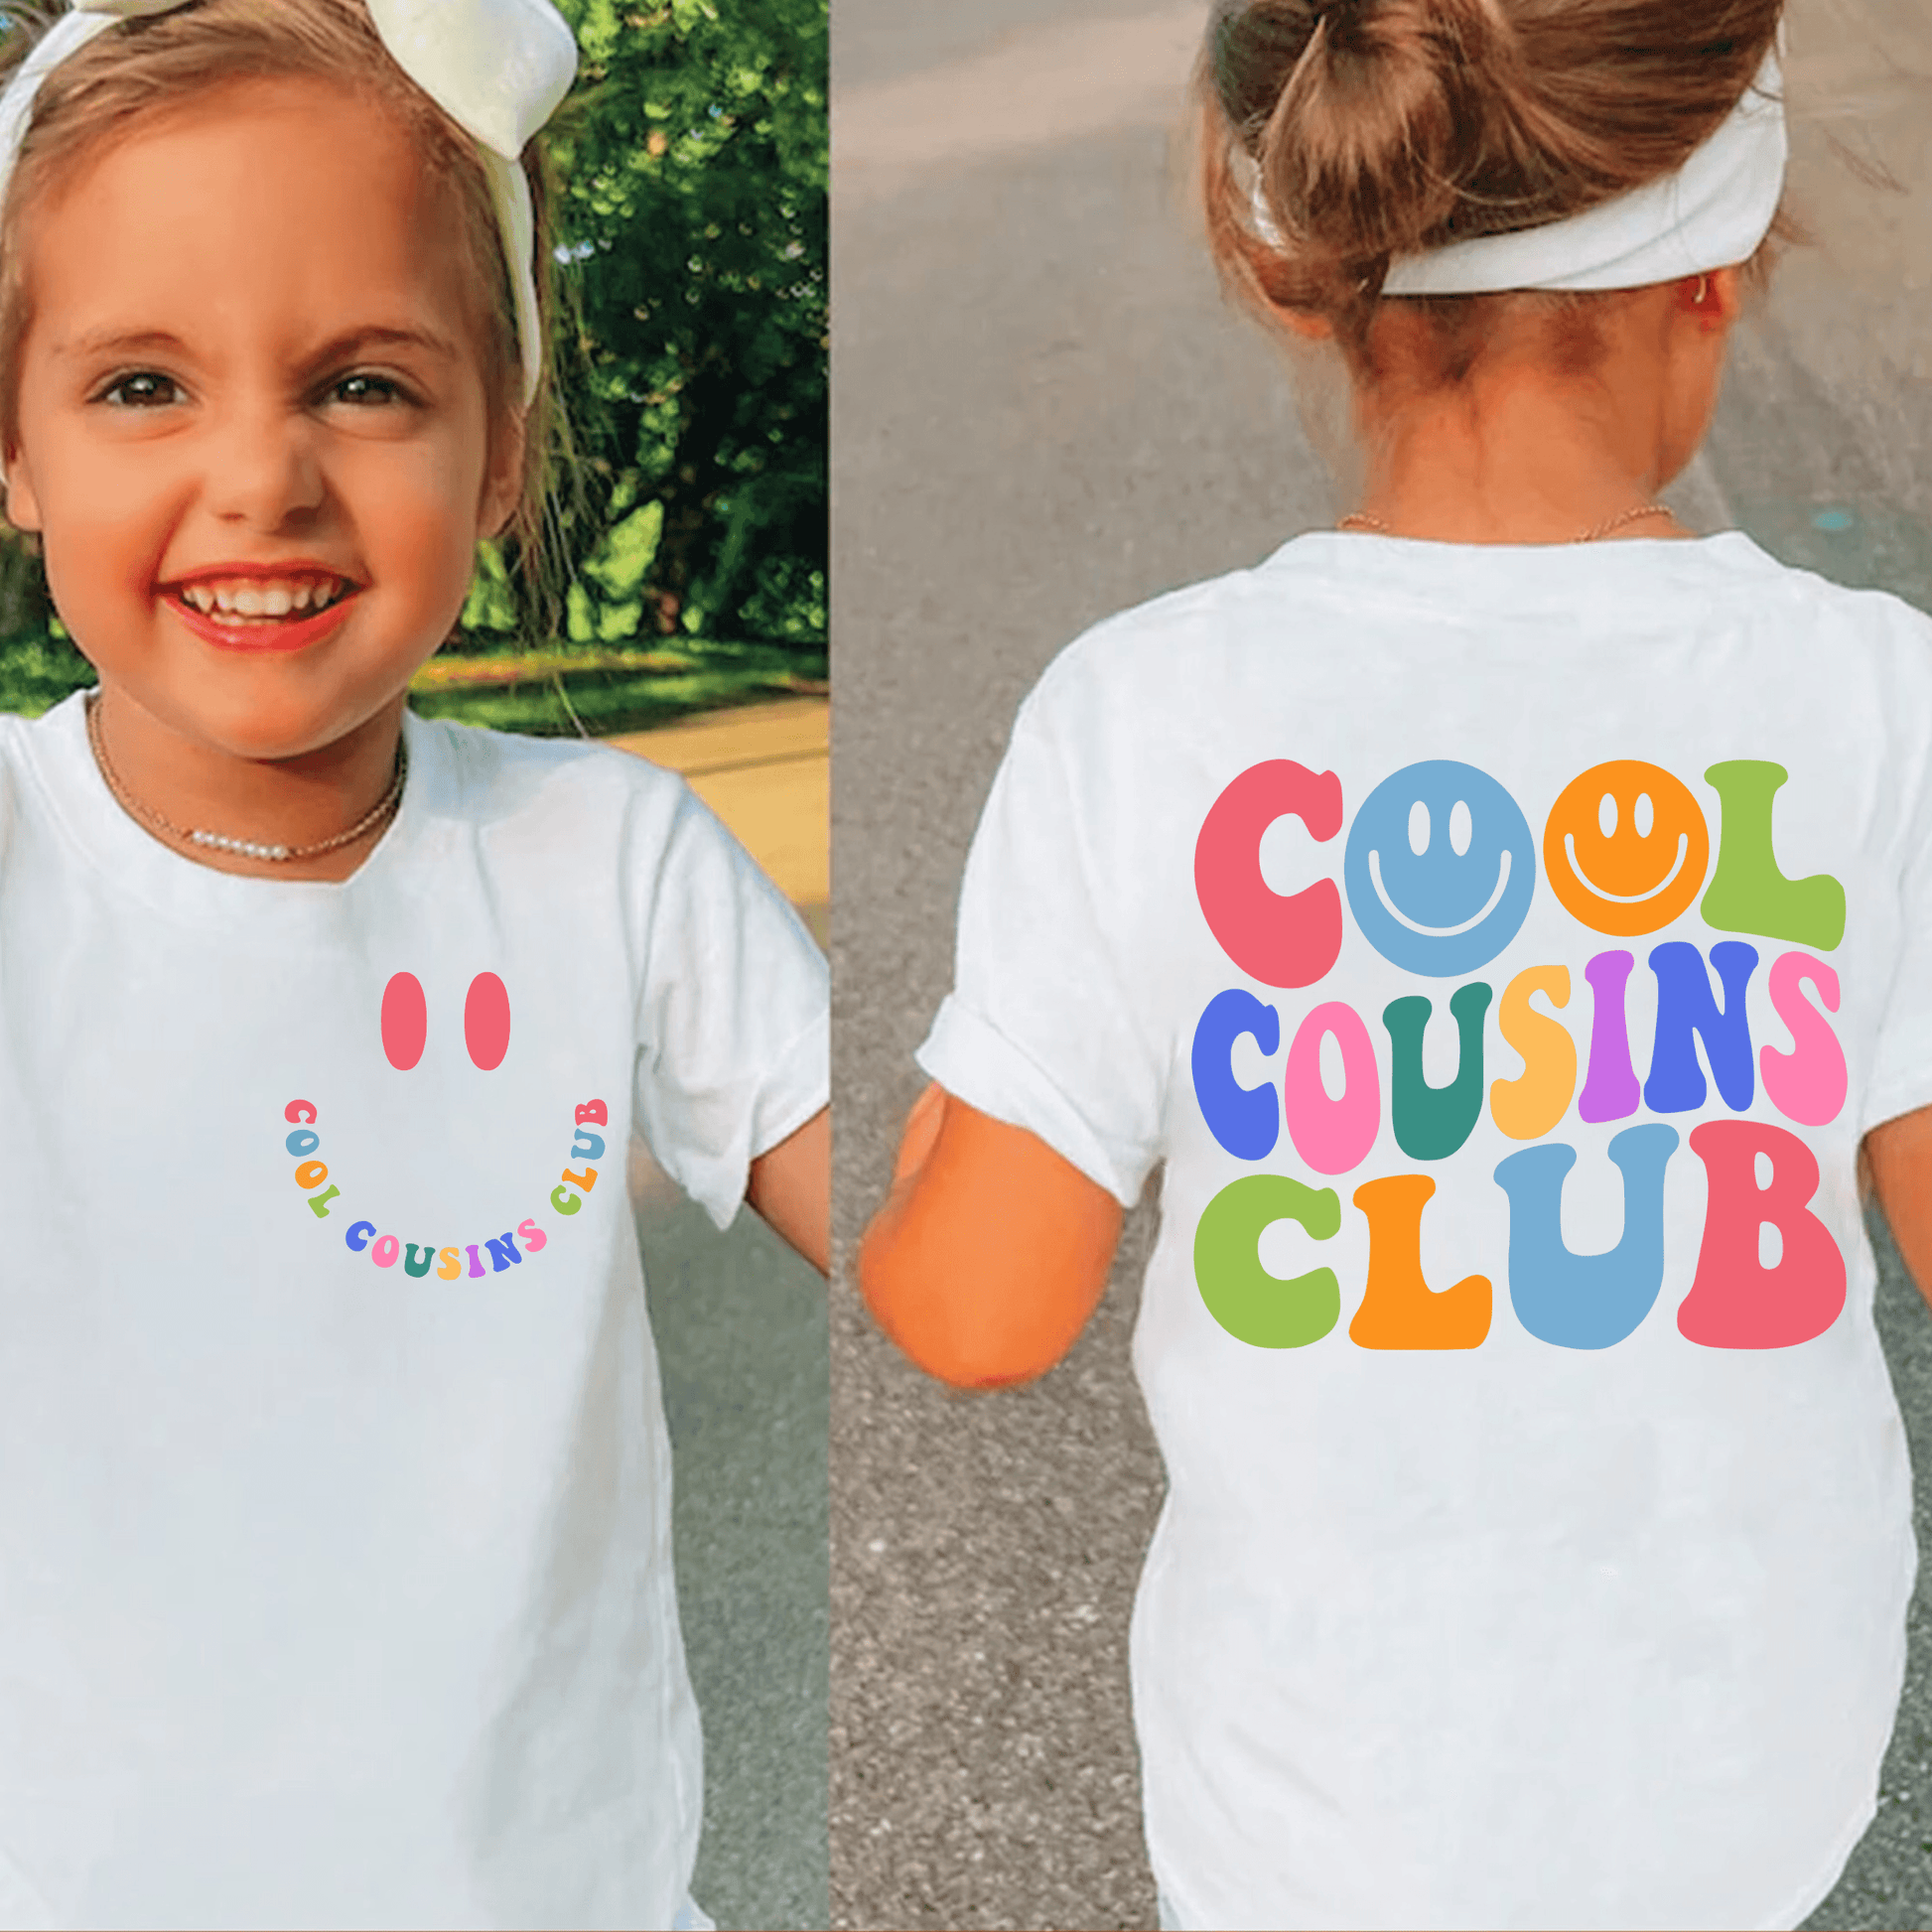 Cool Cousins Club - Uniting Family Fun & Retro Charm Tee - GiftHaus